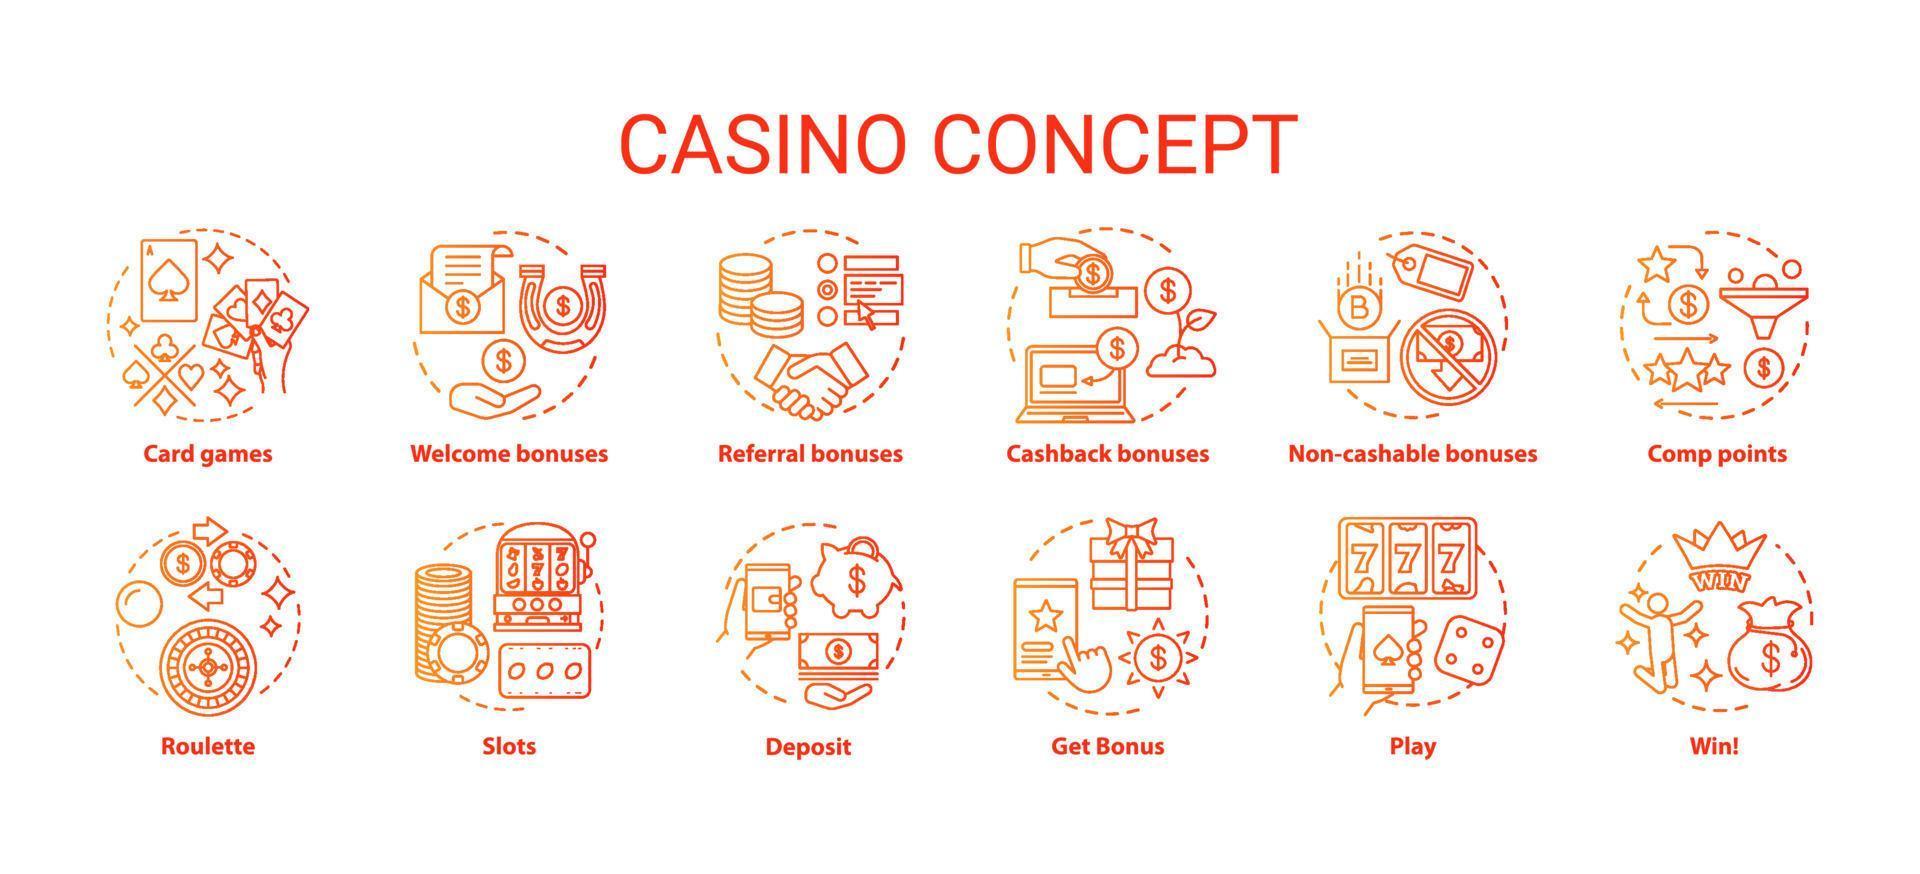 Casino-Konzept-Icons gesetzt. Online-Glücksspiele und Bonusideen für dünne Linienillustrationen. Spielautomaten, Kartenspiele, Roulette. Glücksspiel. Vektor isolierte Umrisszeichnungen Pack